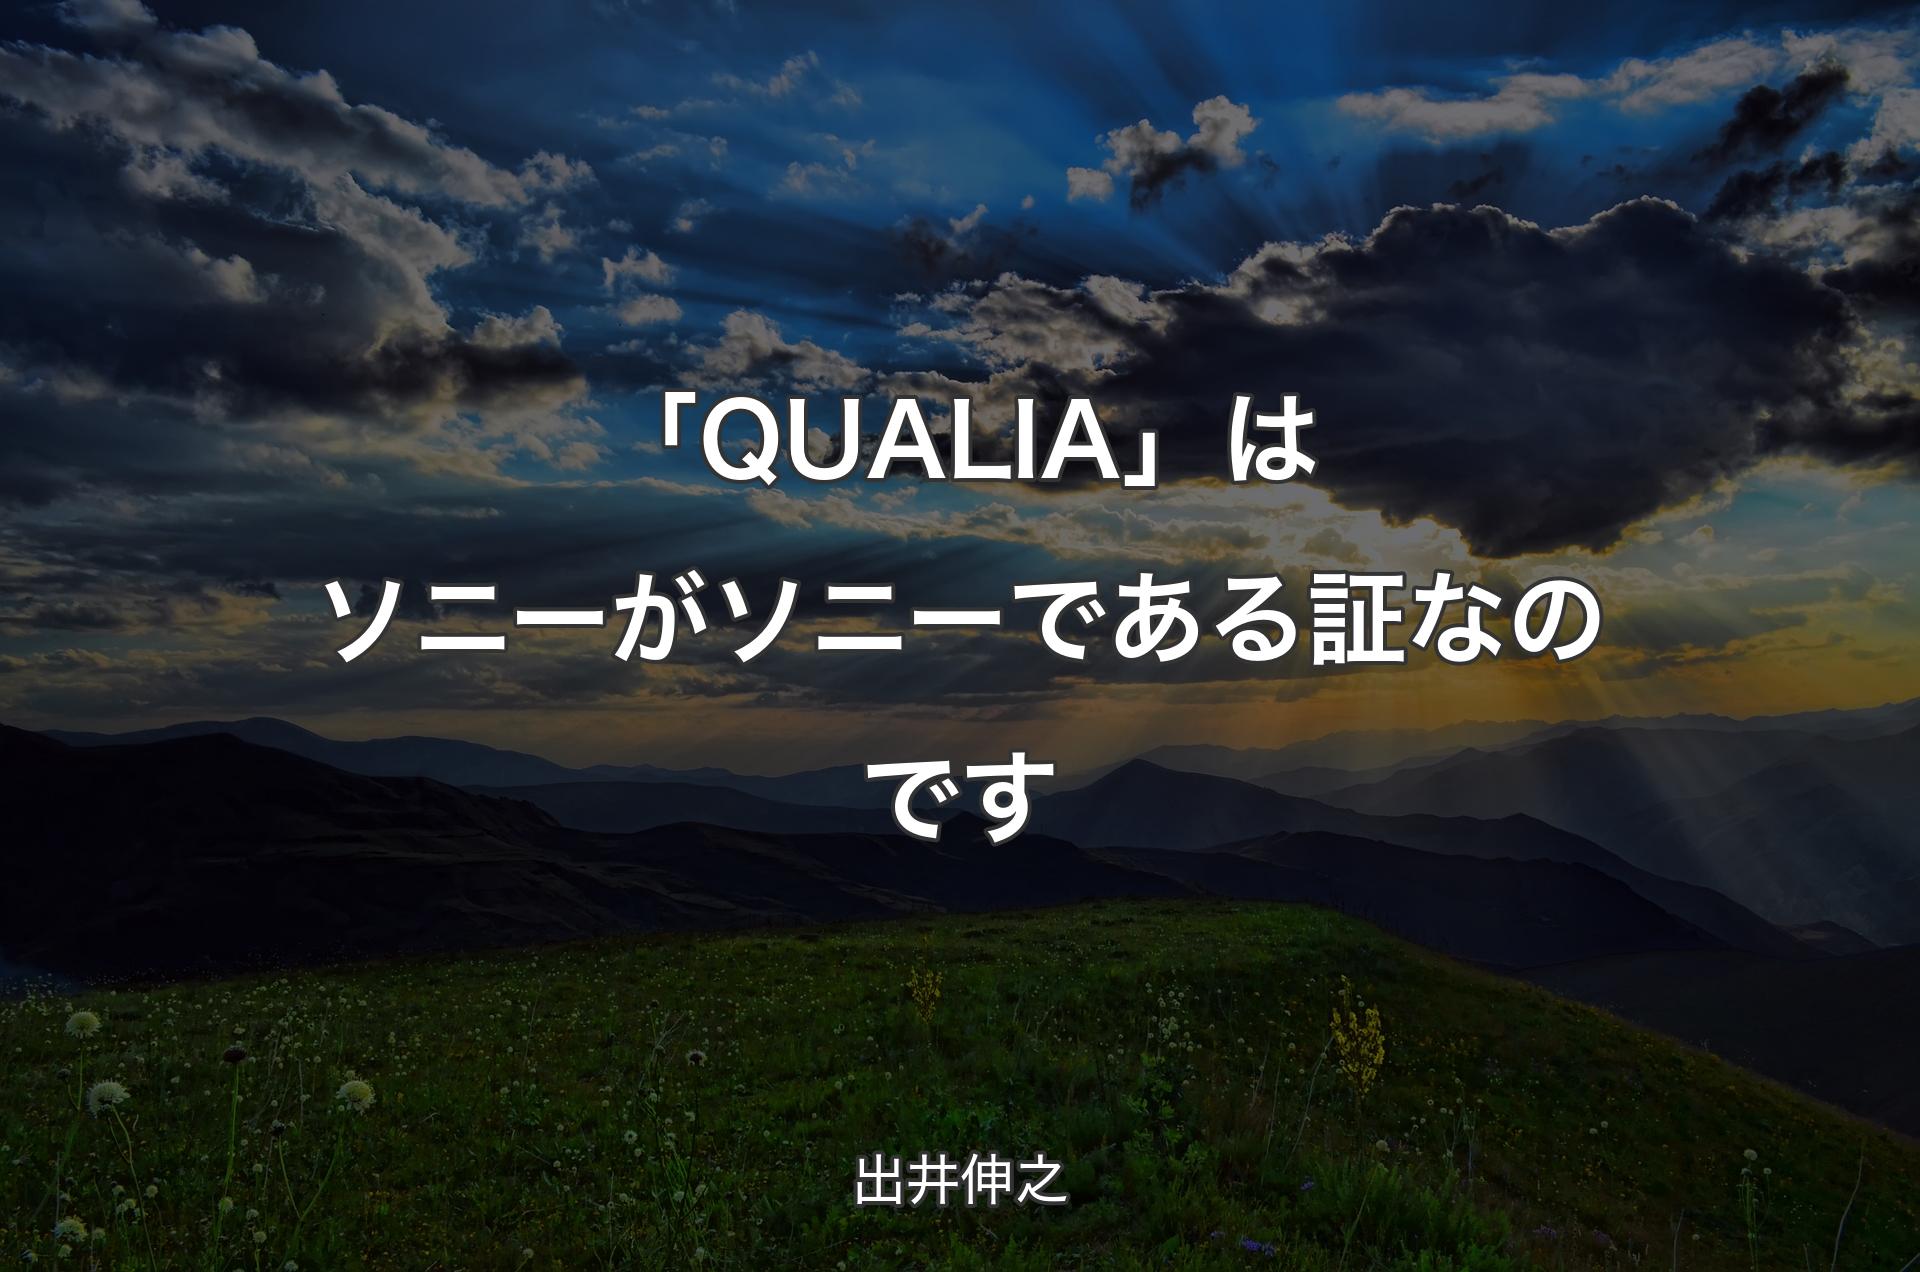 「QUALIA」はソニーがソニーである証なのです - 出井伸之